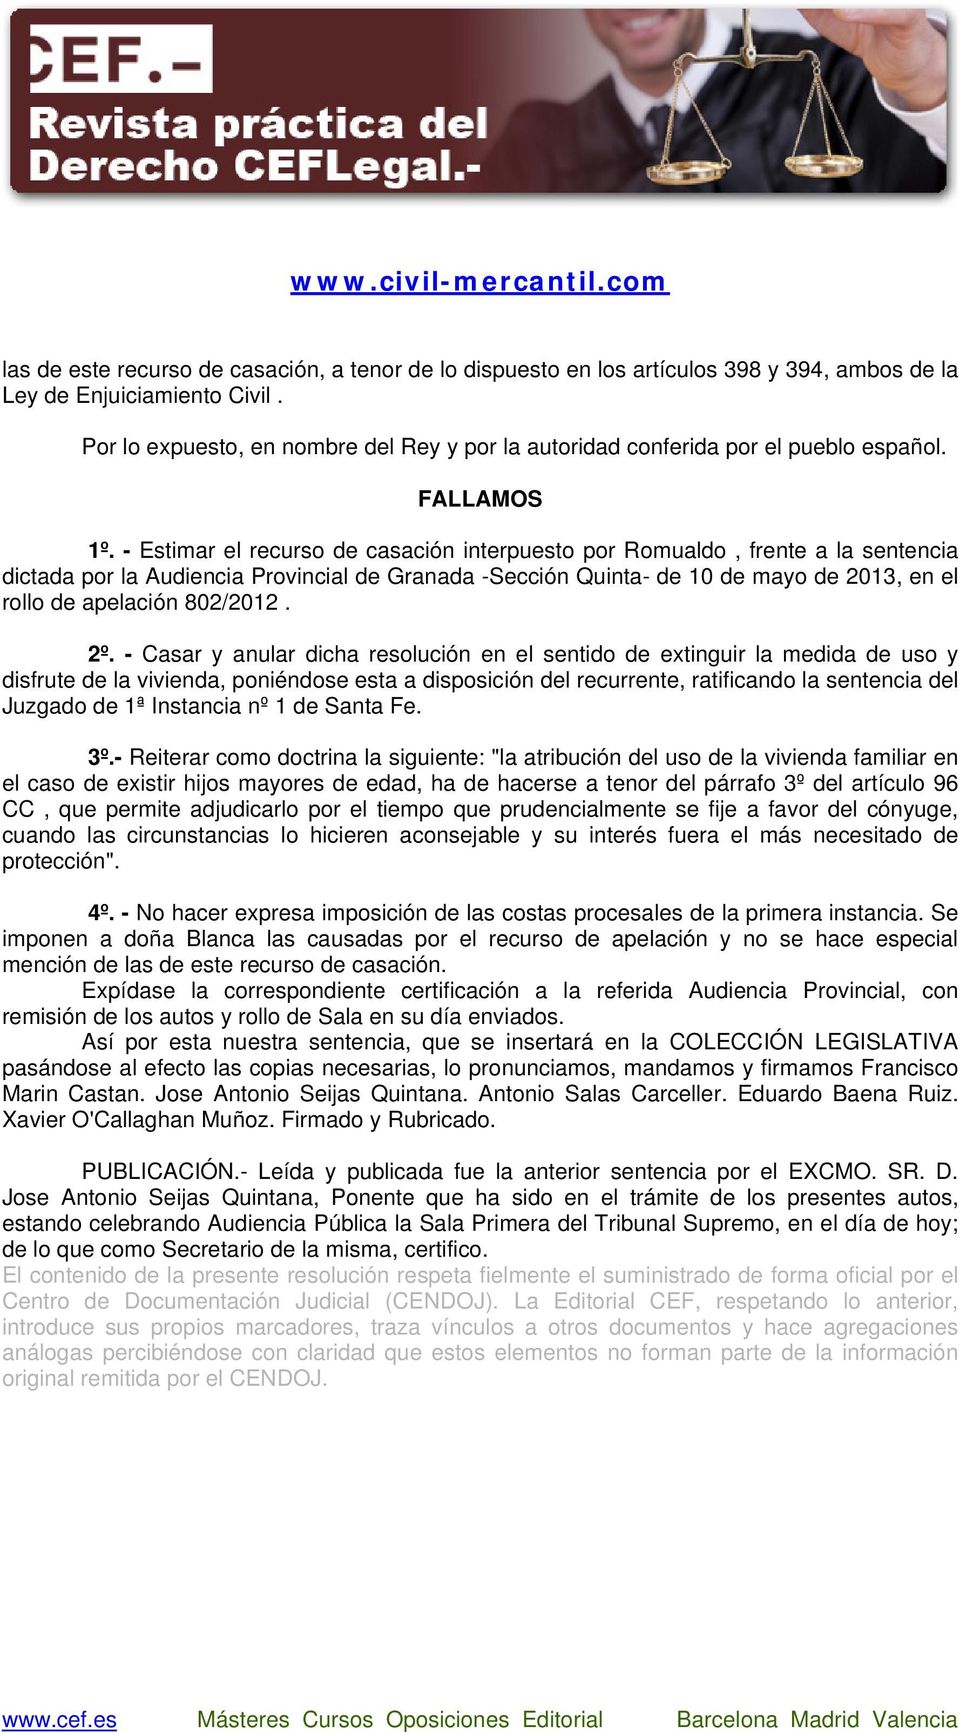 - Estimar el recurso de casación interpuesto por Romualdo, frente a la sentencia dictada por la Audiencia Provincial de Granada -Sección Quinta- de 10 de mayo de 2013, en el rollo de apelación